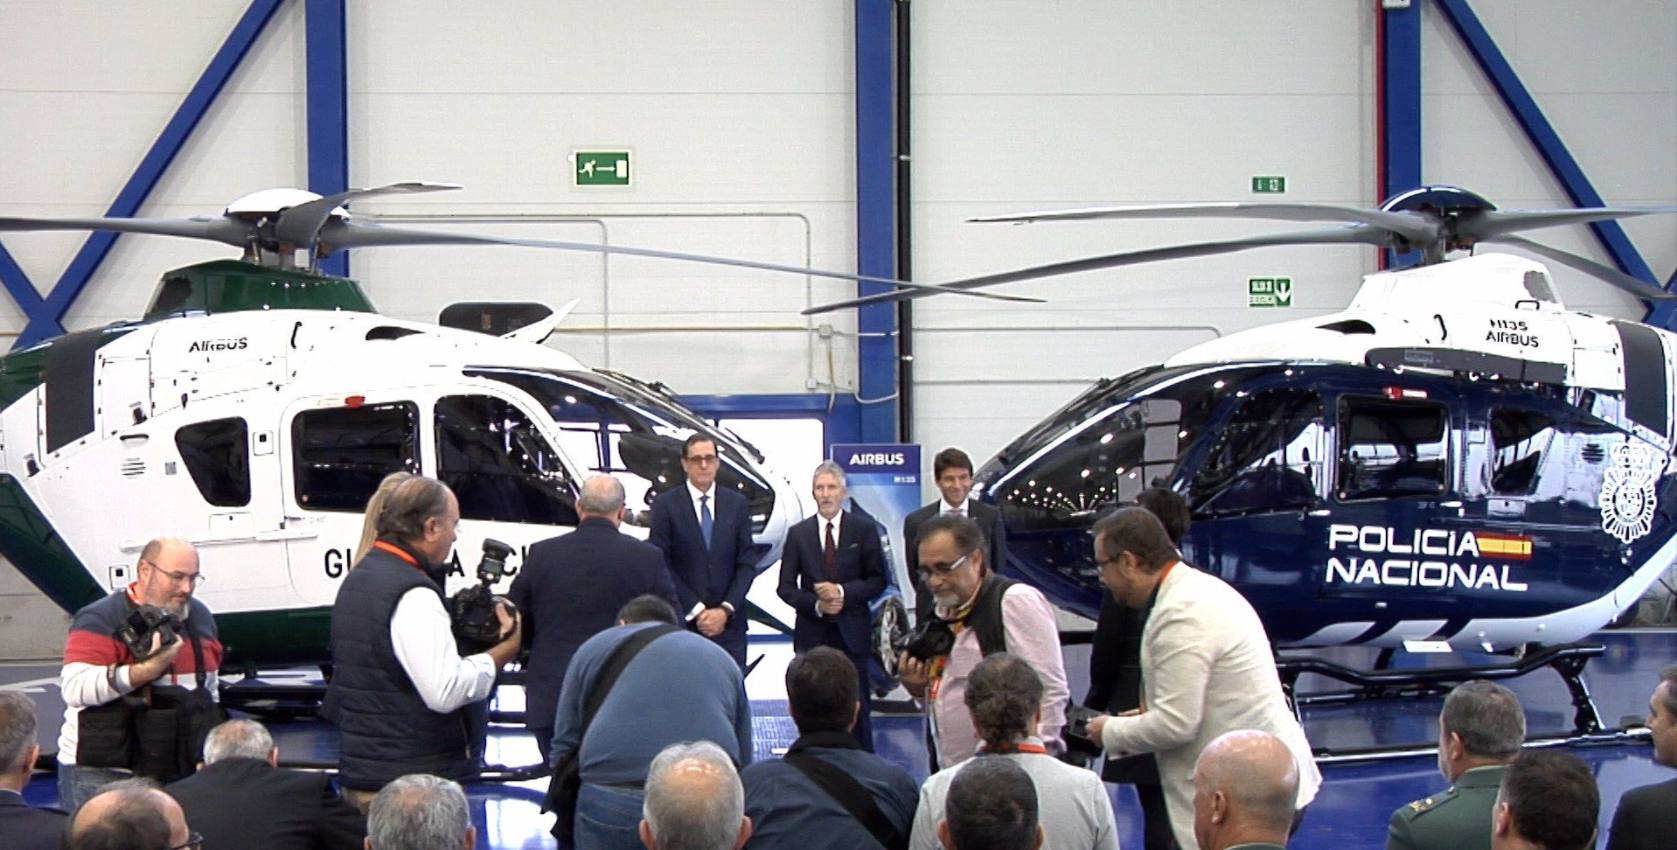 El ministro del Interior, Fernando Grande-Marlaska, preside la entrega de helicópteros en Albacete.